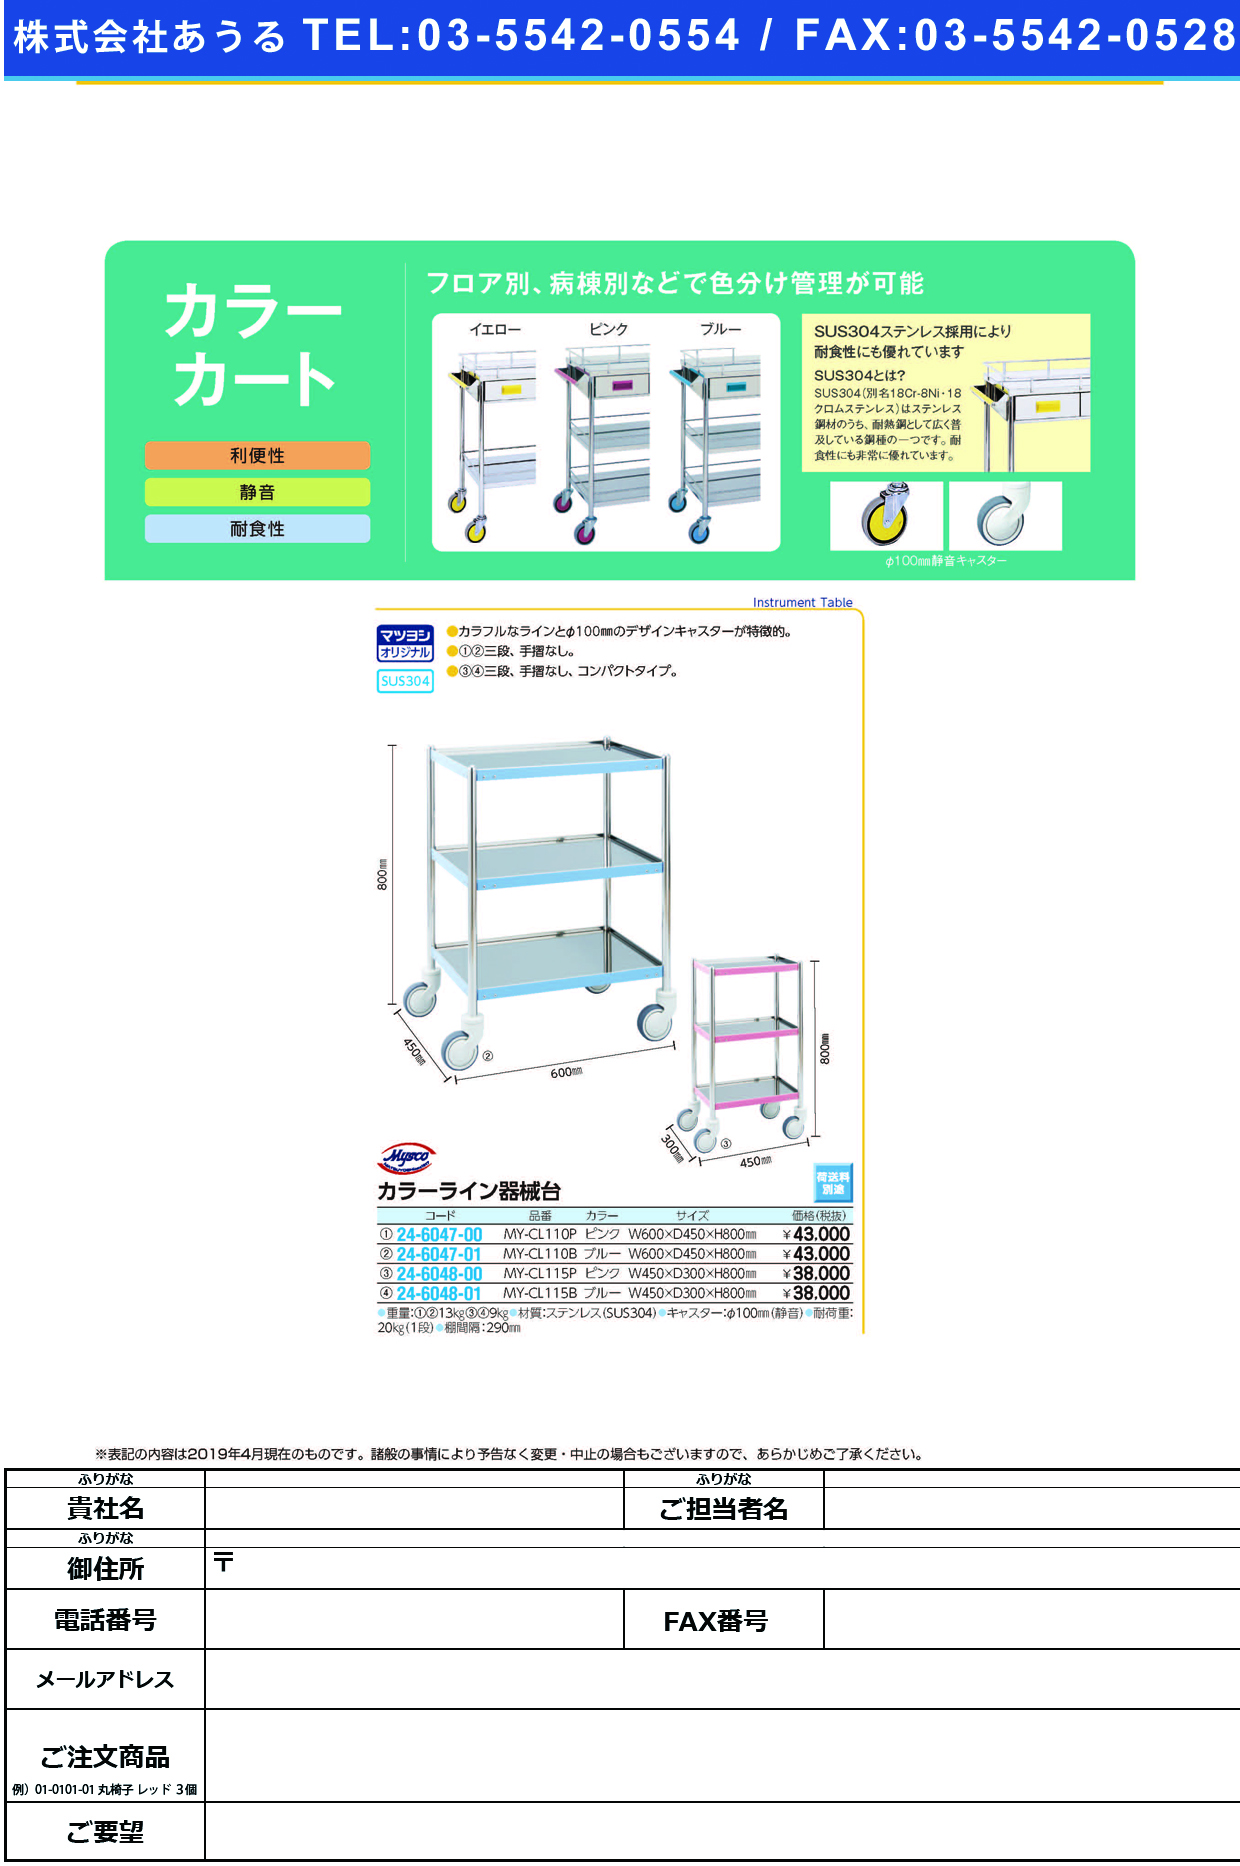 (24-6047-00)カラーライン器械台 MY-CL110P(ﾋﾟﾝｸ) ｶﾗｰﾗｲﾝｷｶｲﾀﾞｲ【1台単位】【2019年カタログ商品】